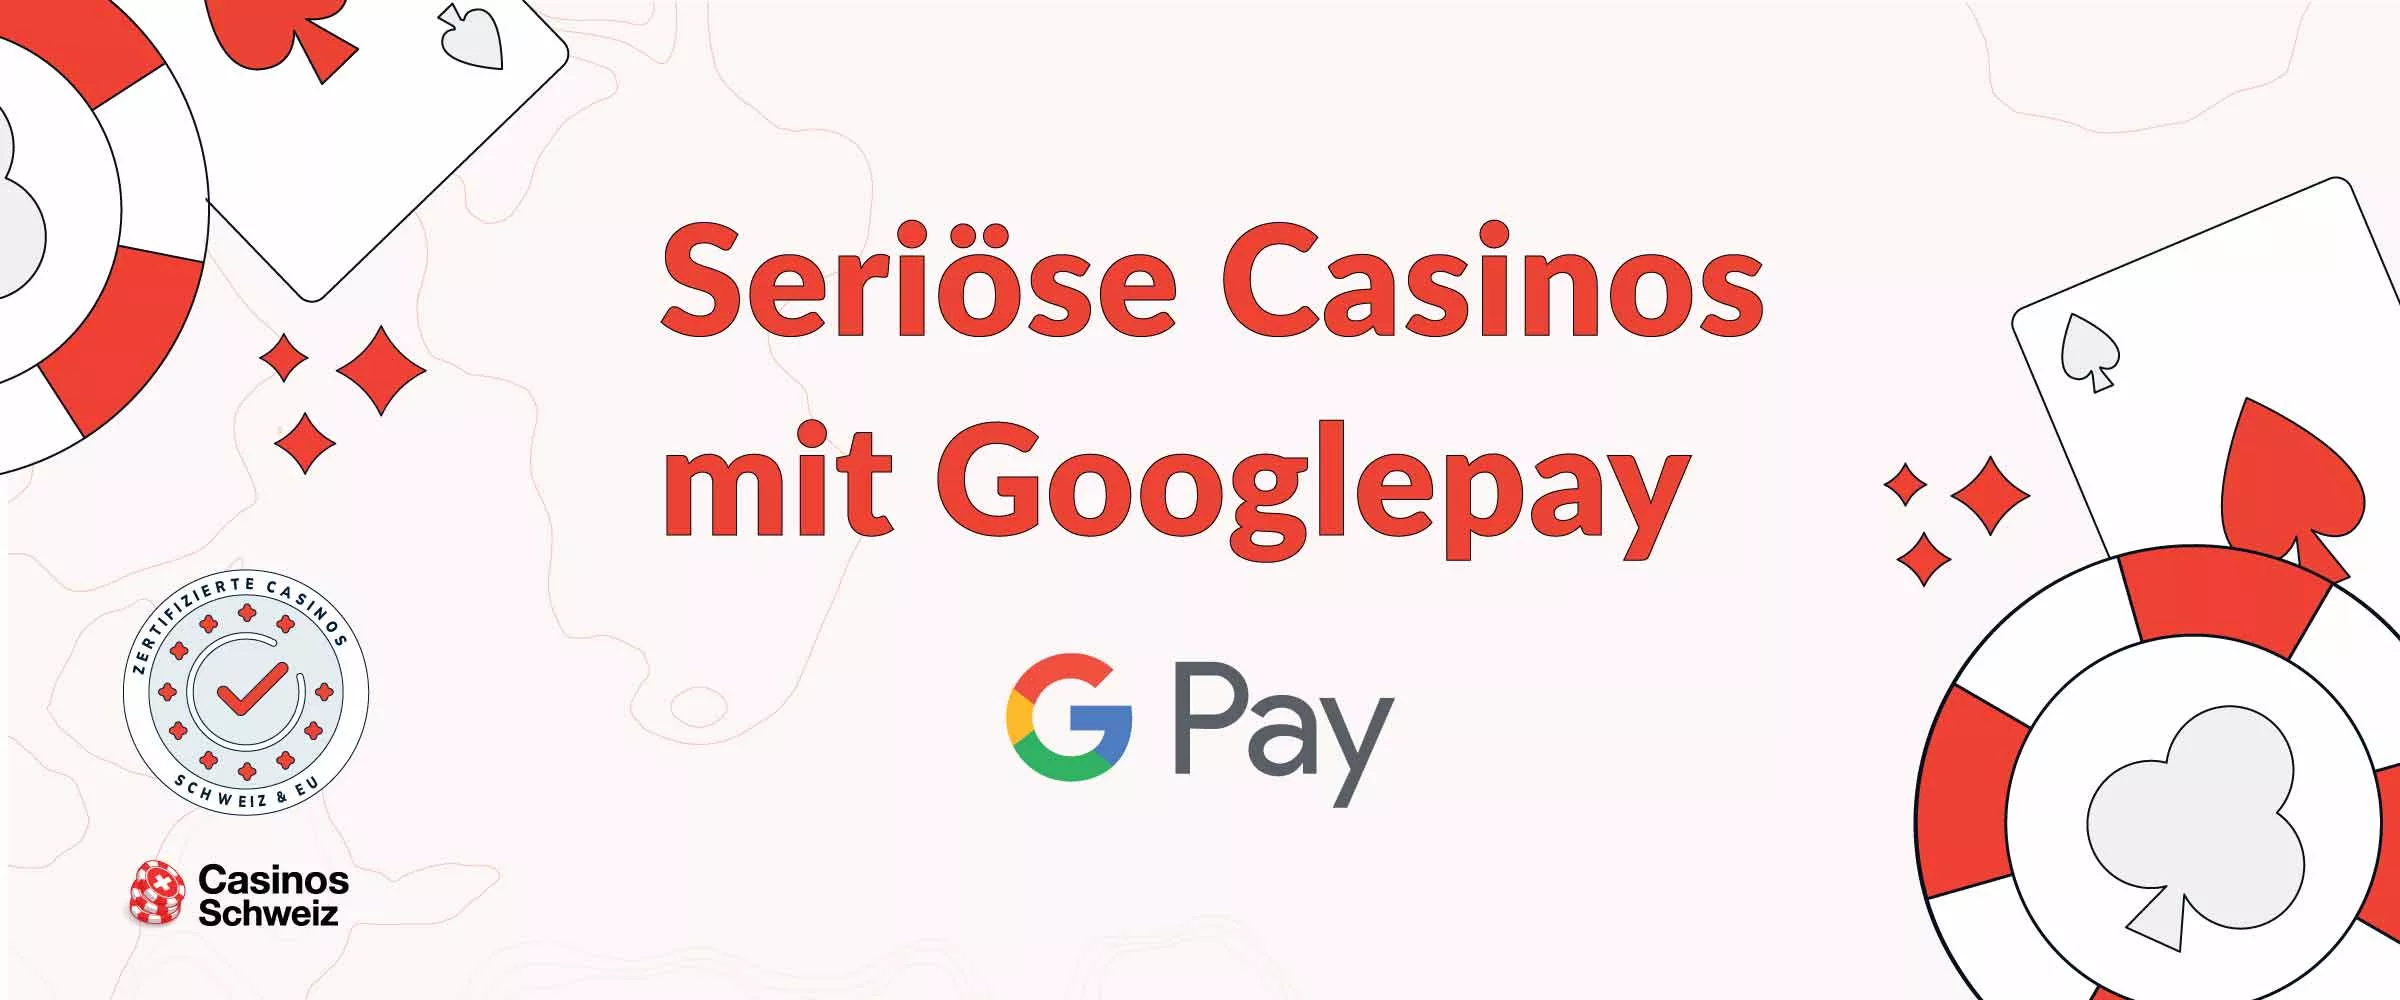 Seriöse Casinos mit Googlepay